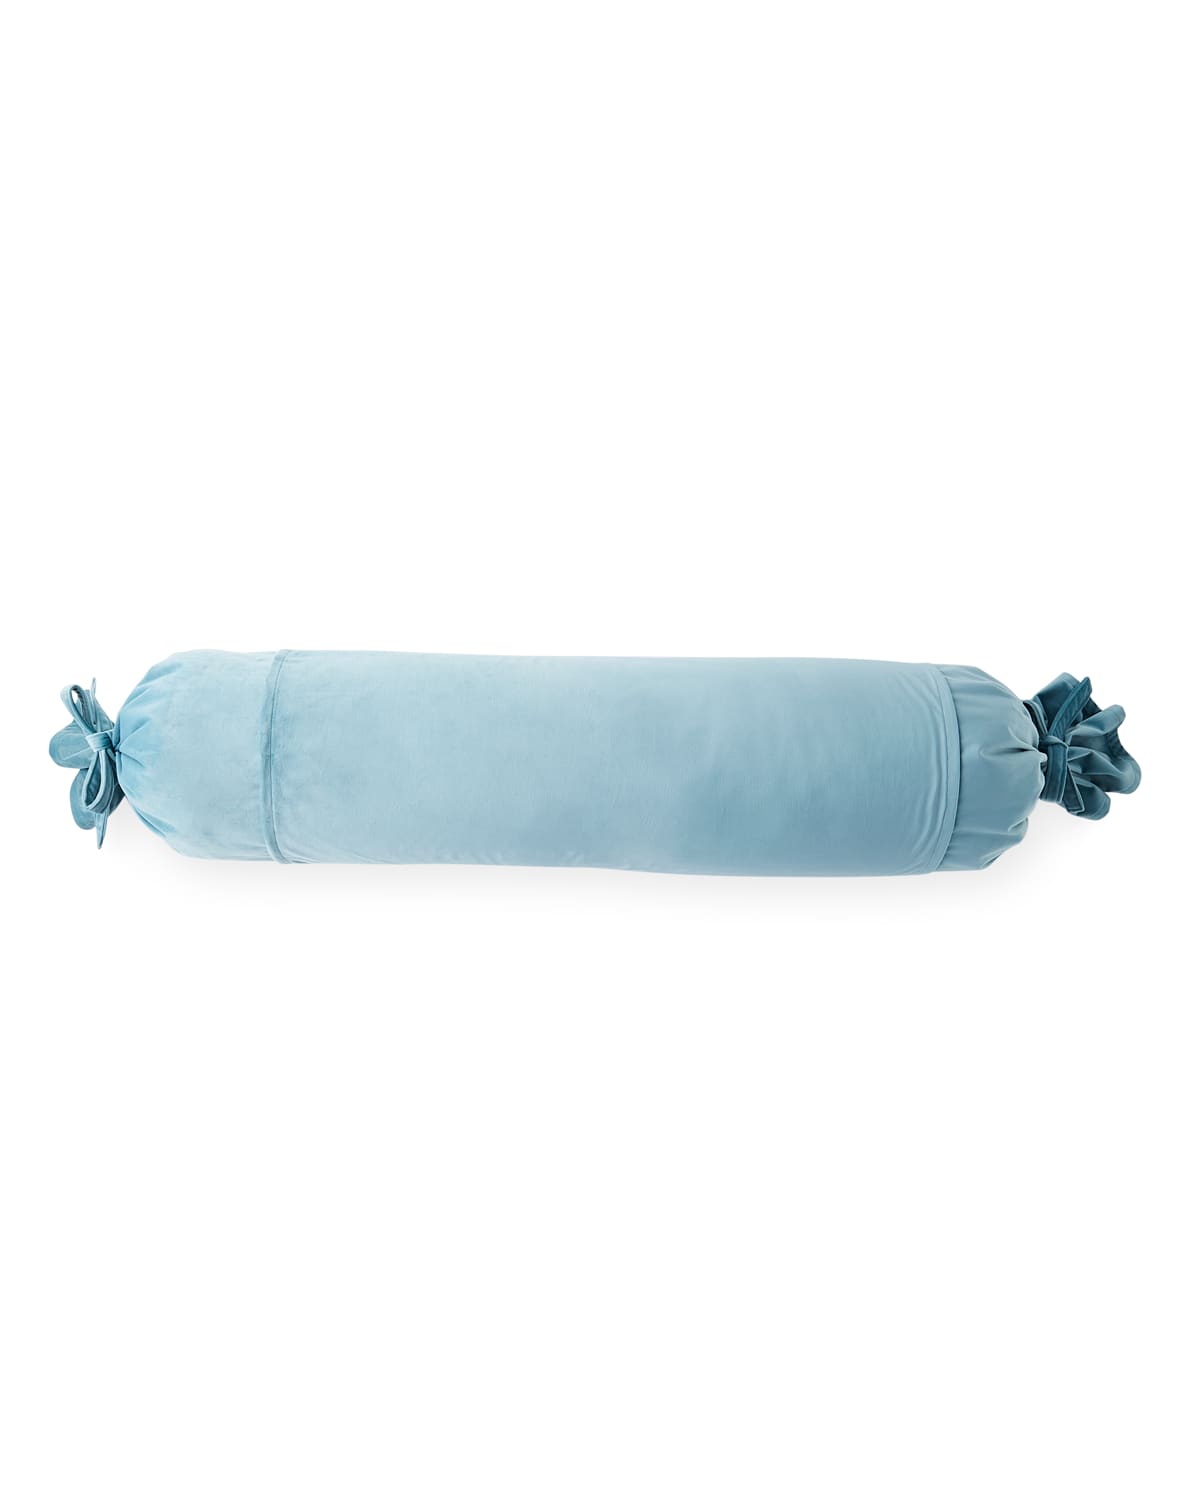 25 Mackenzie Lane Spa Bird Large Velvet Bolster Pillow In Blue